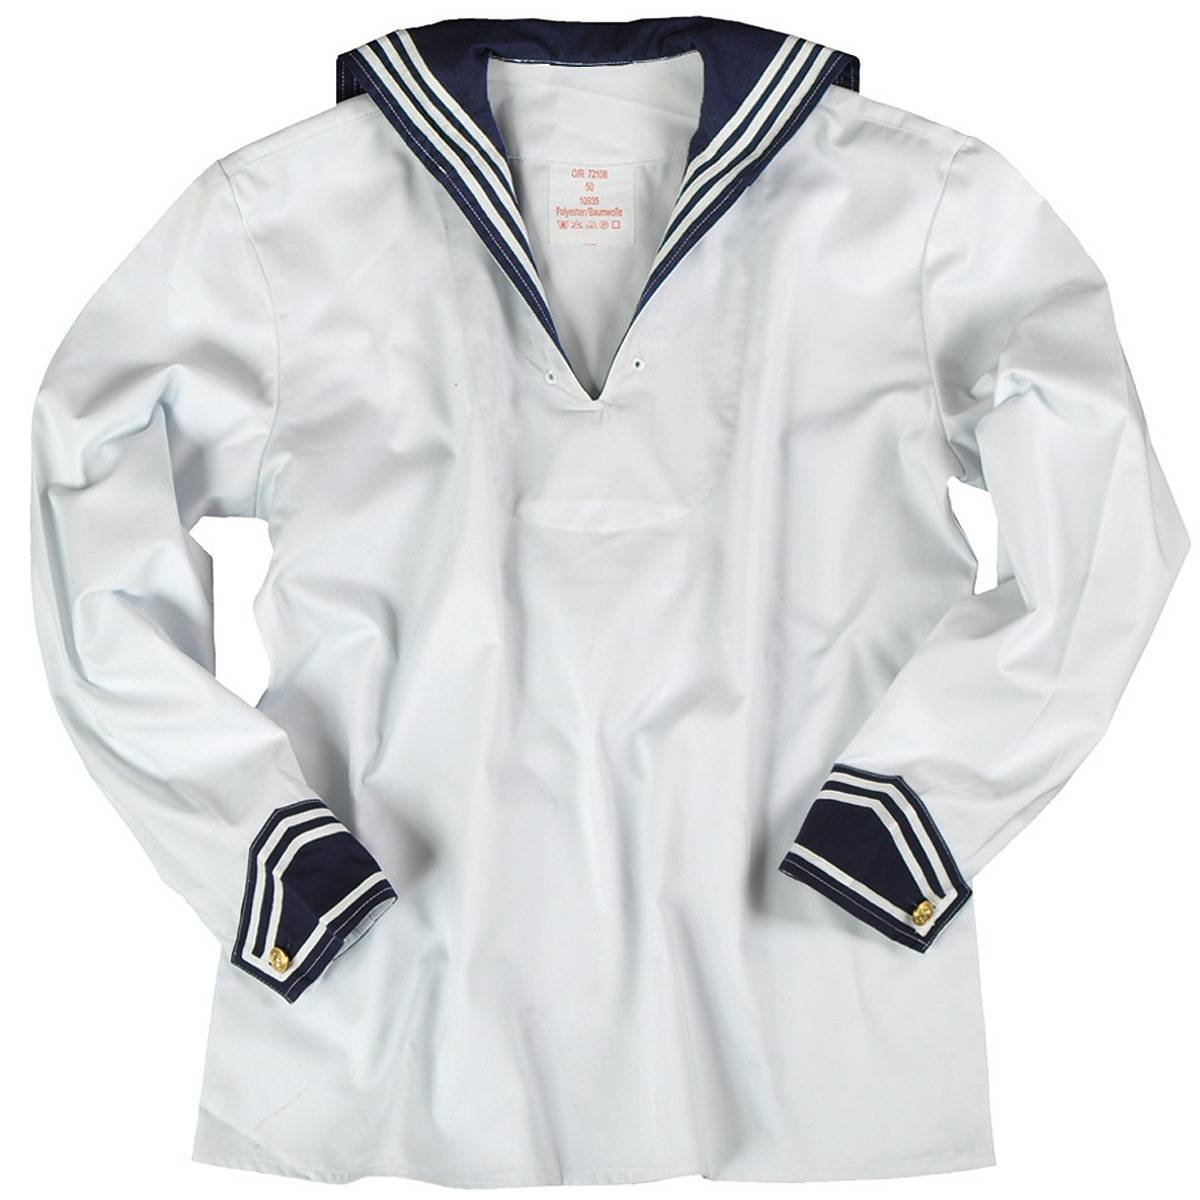 Bw Marine Bordhemd NEU  Kielerhemd weiss mit blauem Kragen Grösse 48 